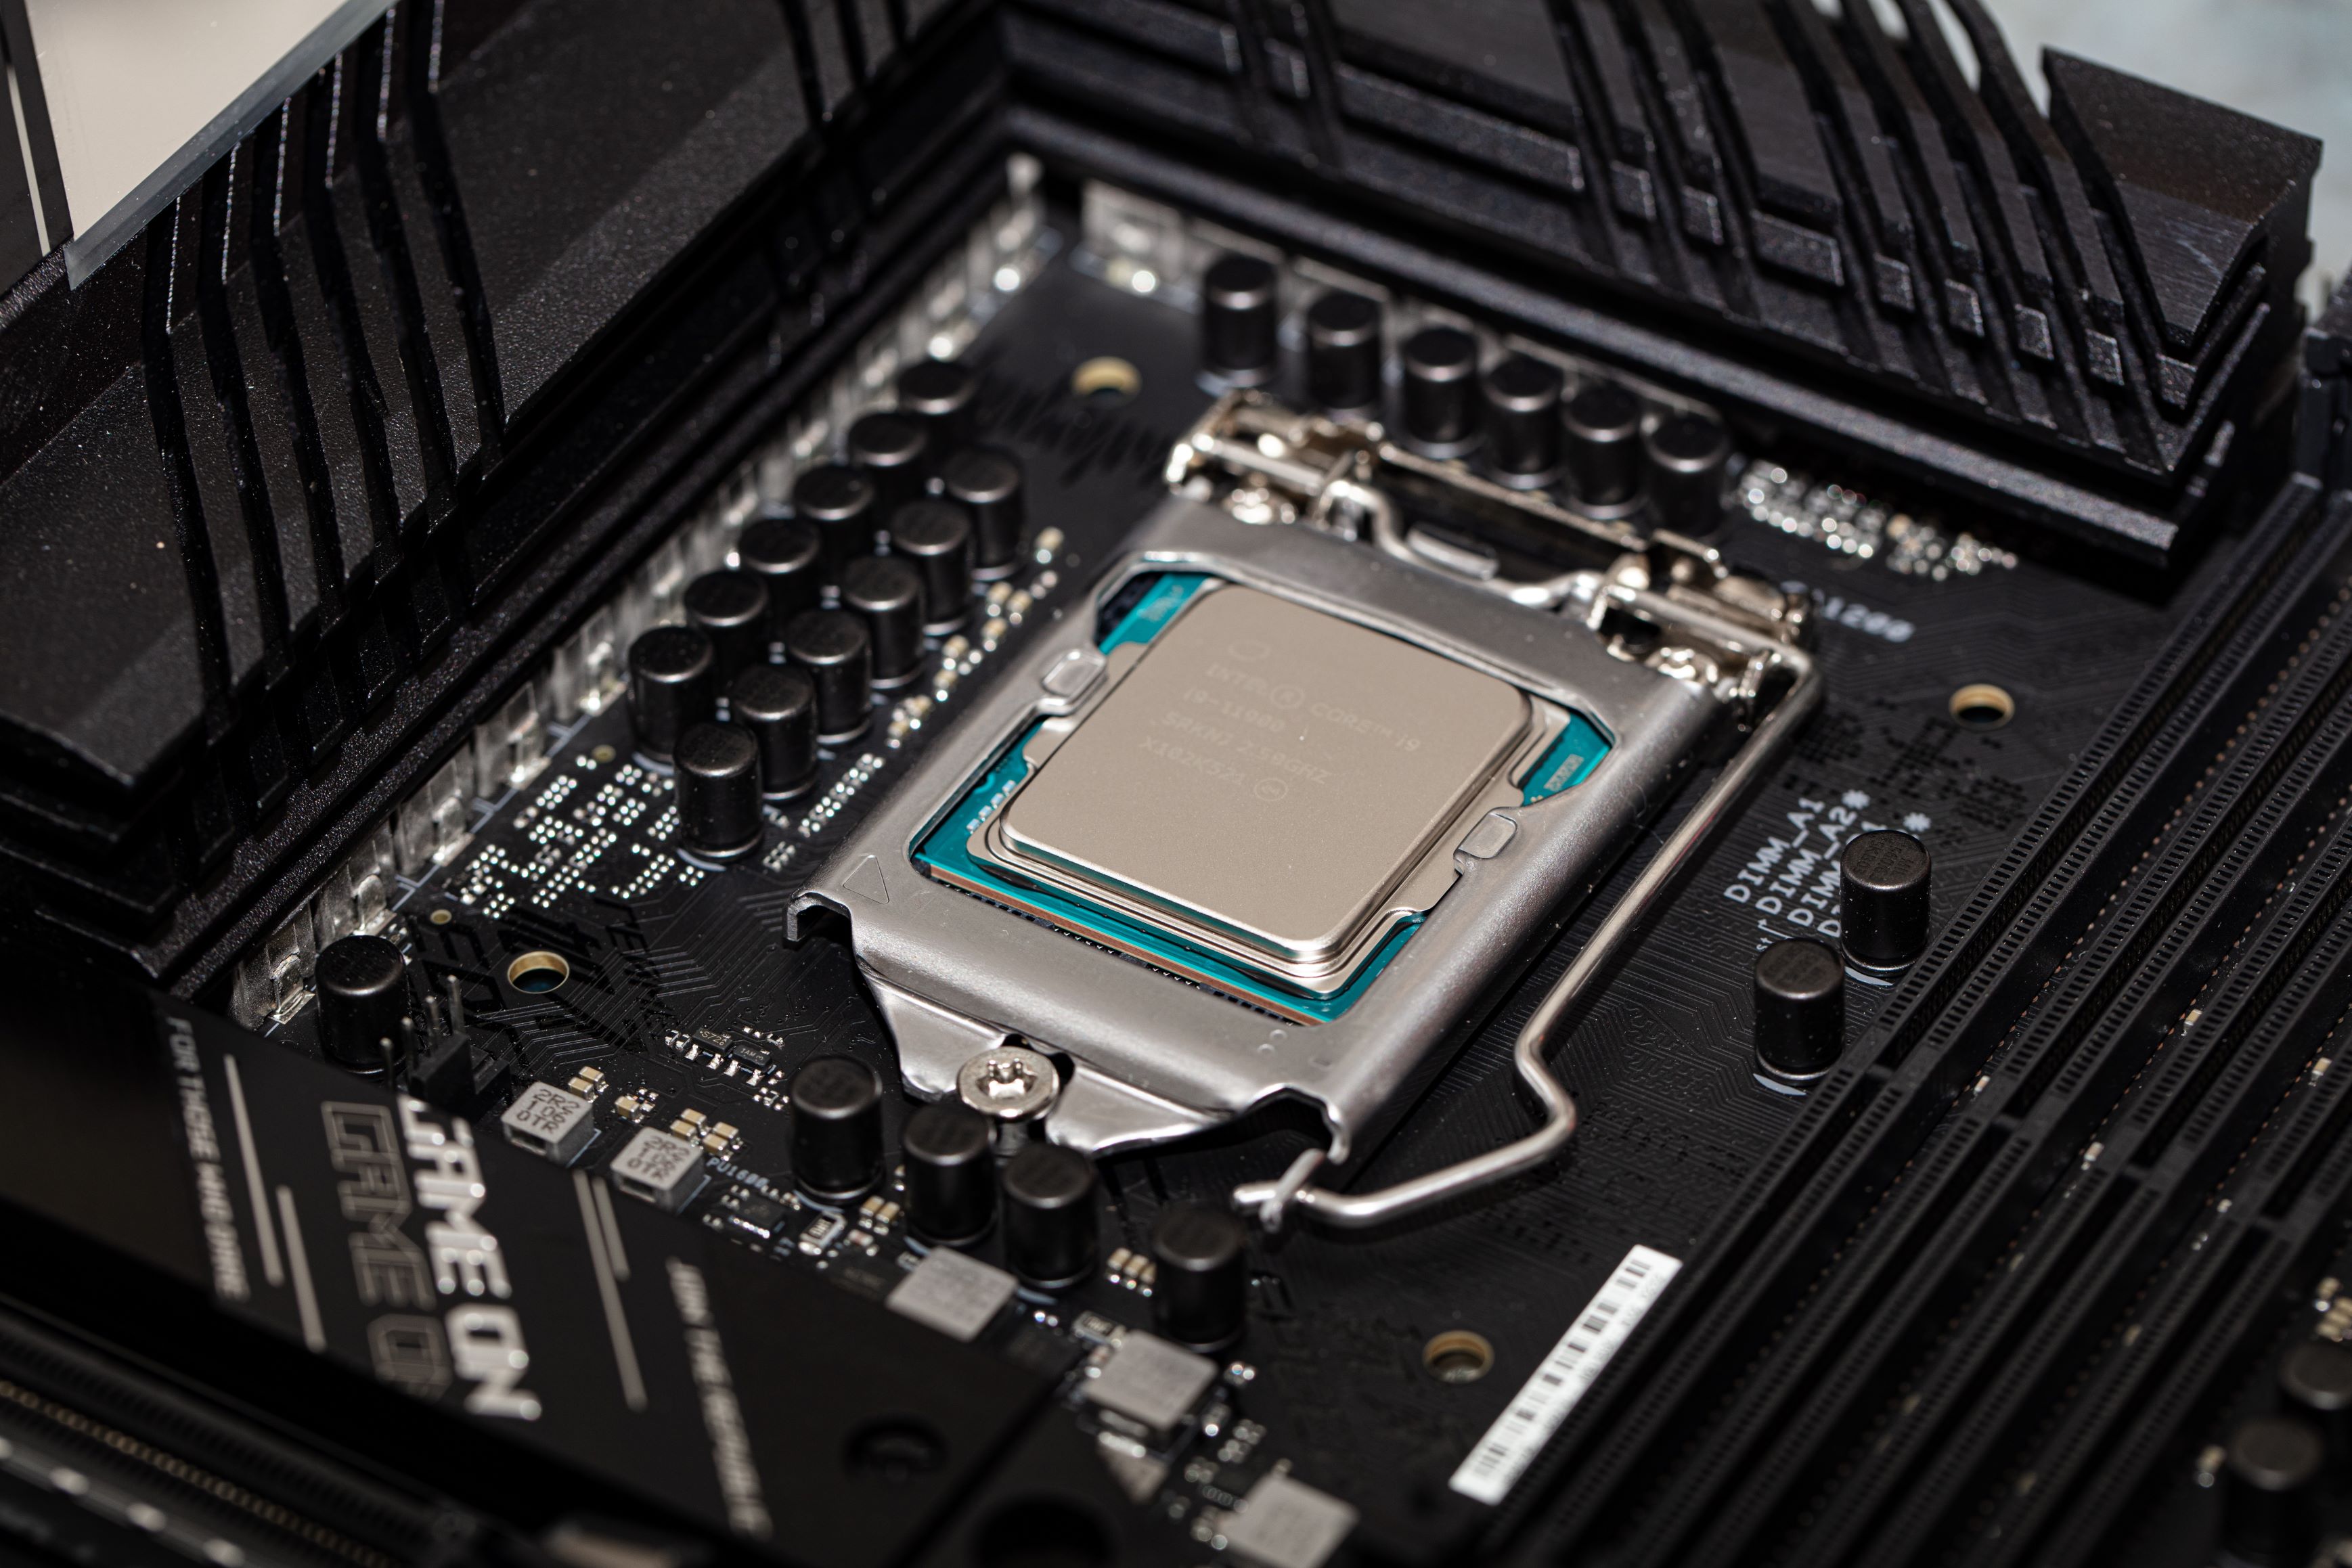 Processeur Intel Core i7 ou i9 :quelle différences ? Que choisir ?